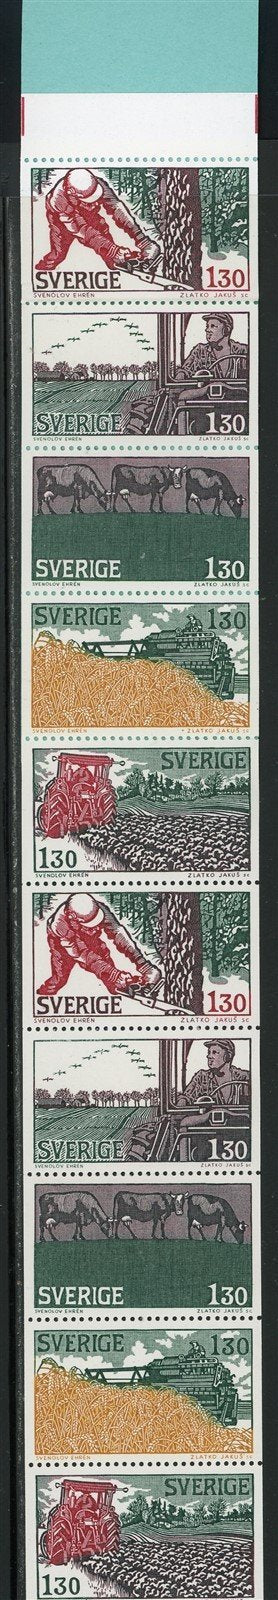 Sweden Scott #1284 MNH BOOKLET COMPLETE Farming CV$9+